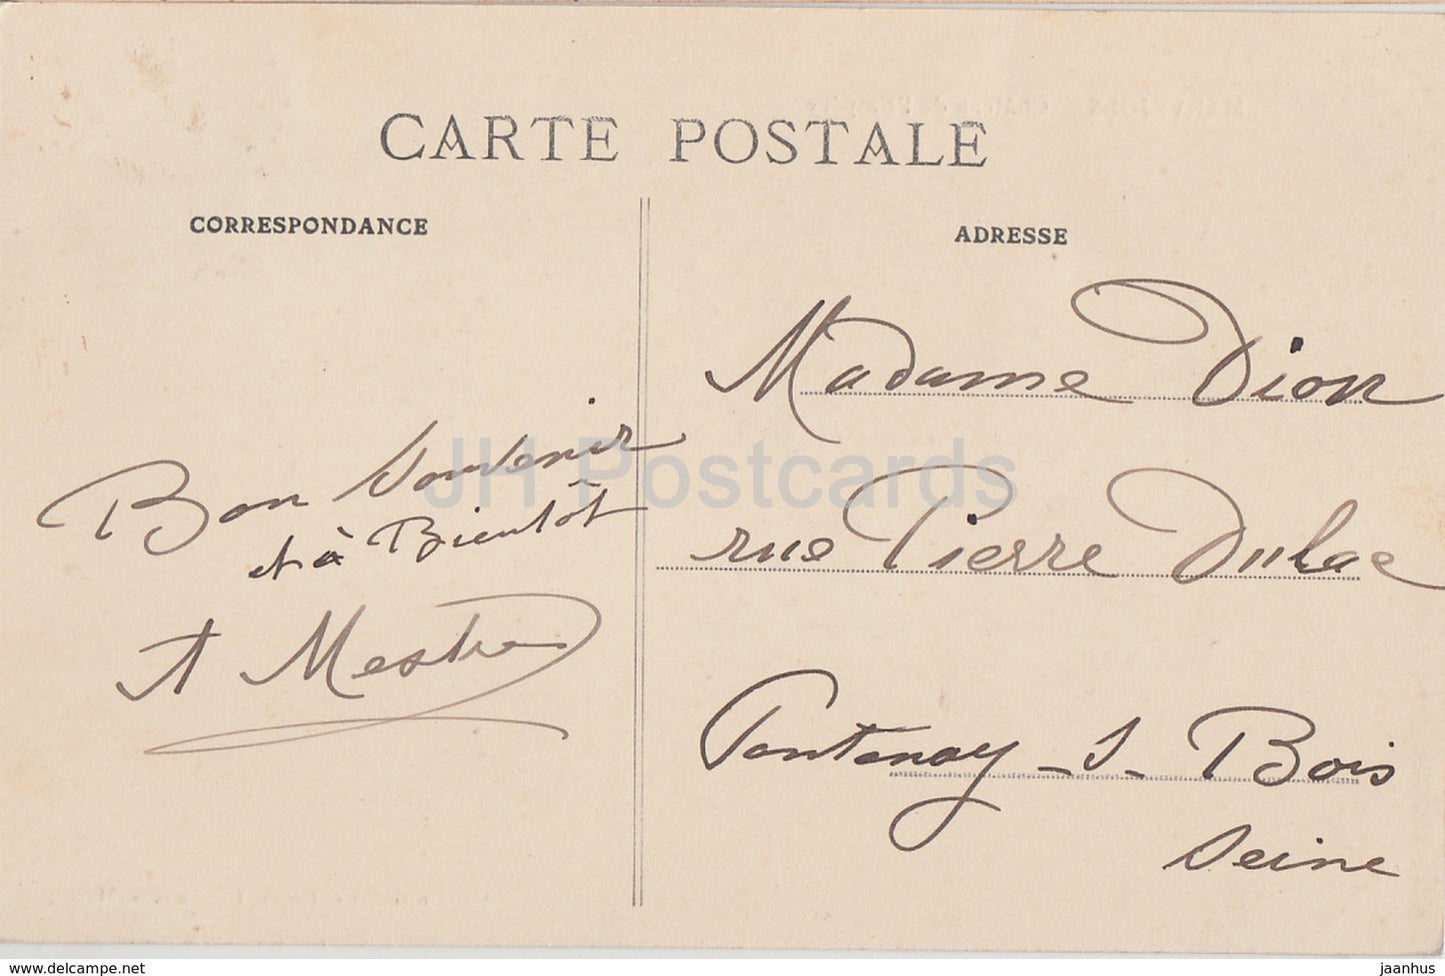 Marvejols - Chateau de l'Empery - castle - old postcard - France - used